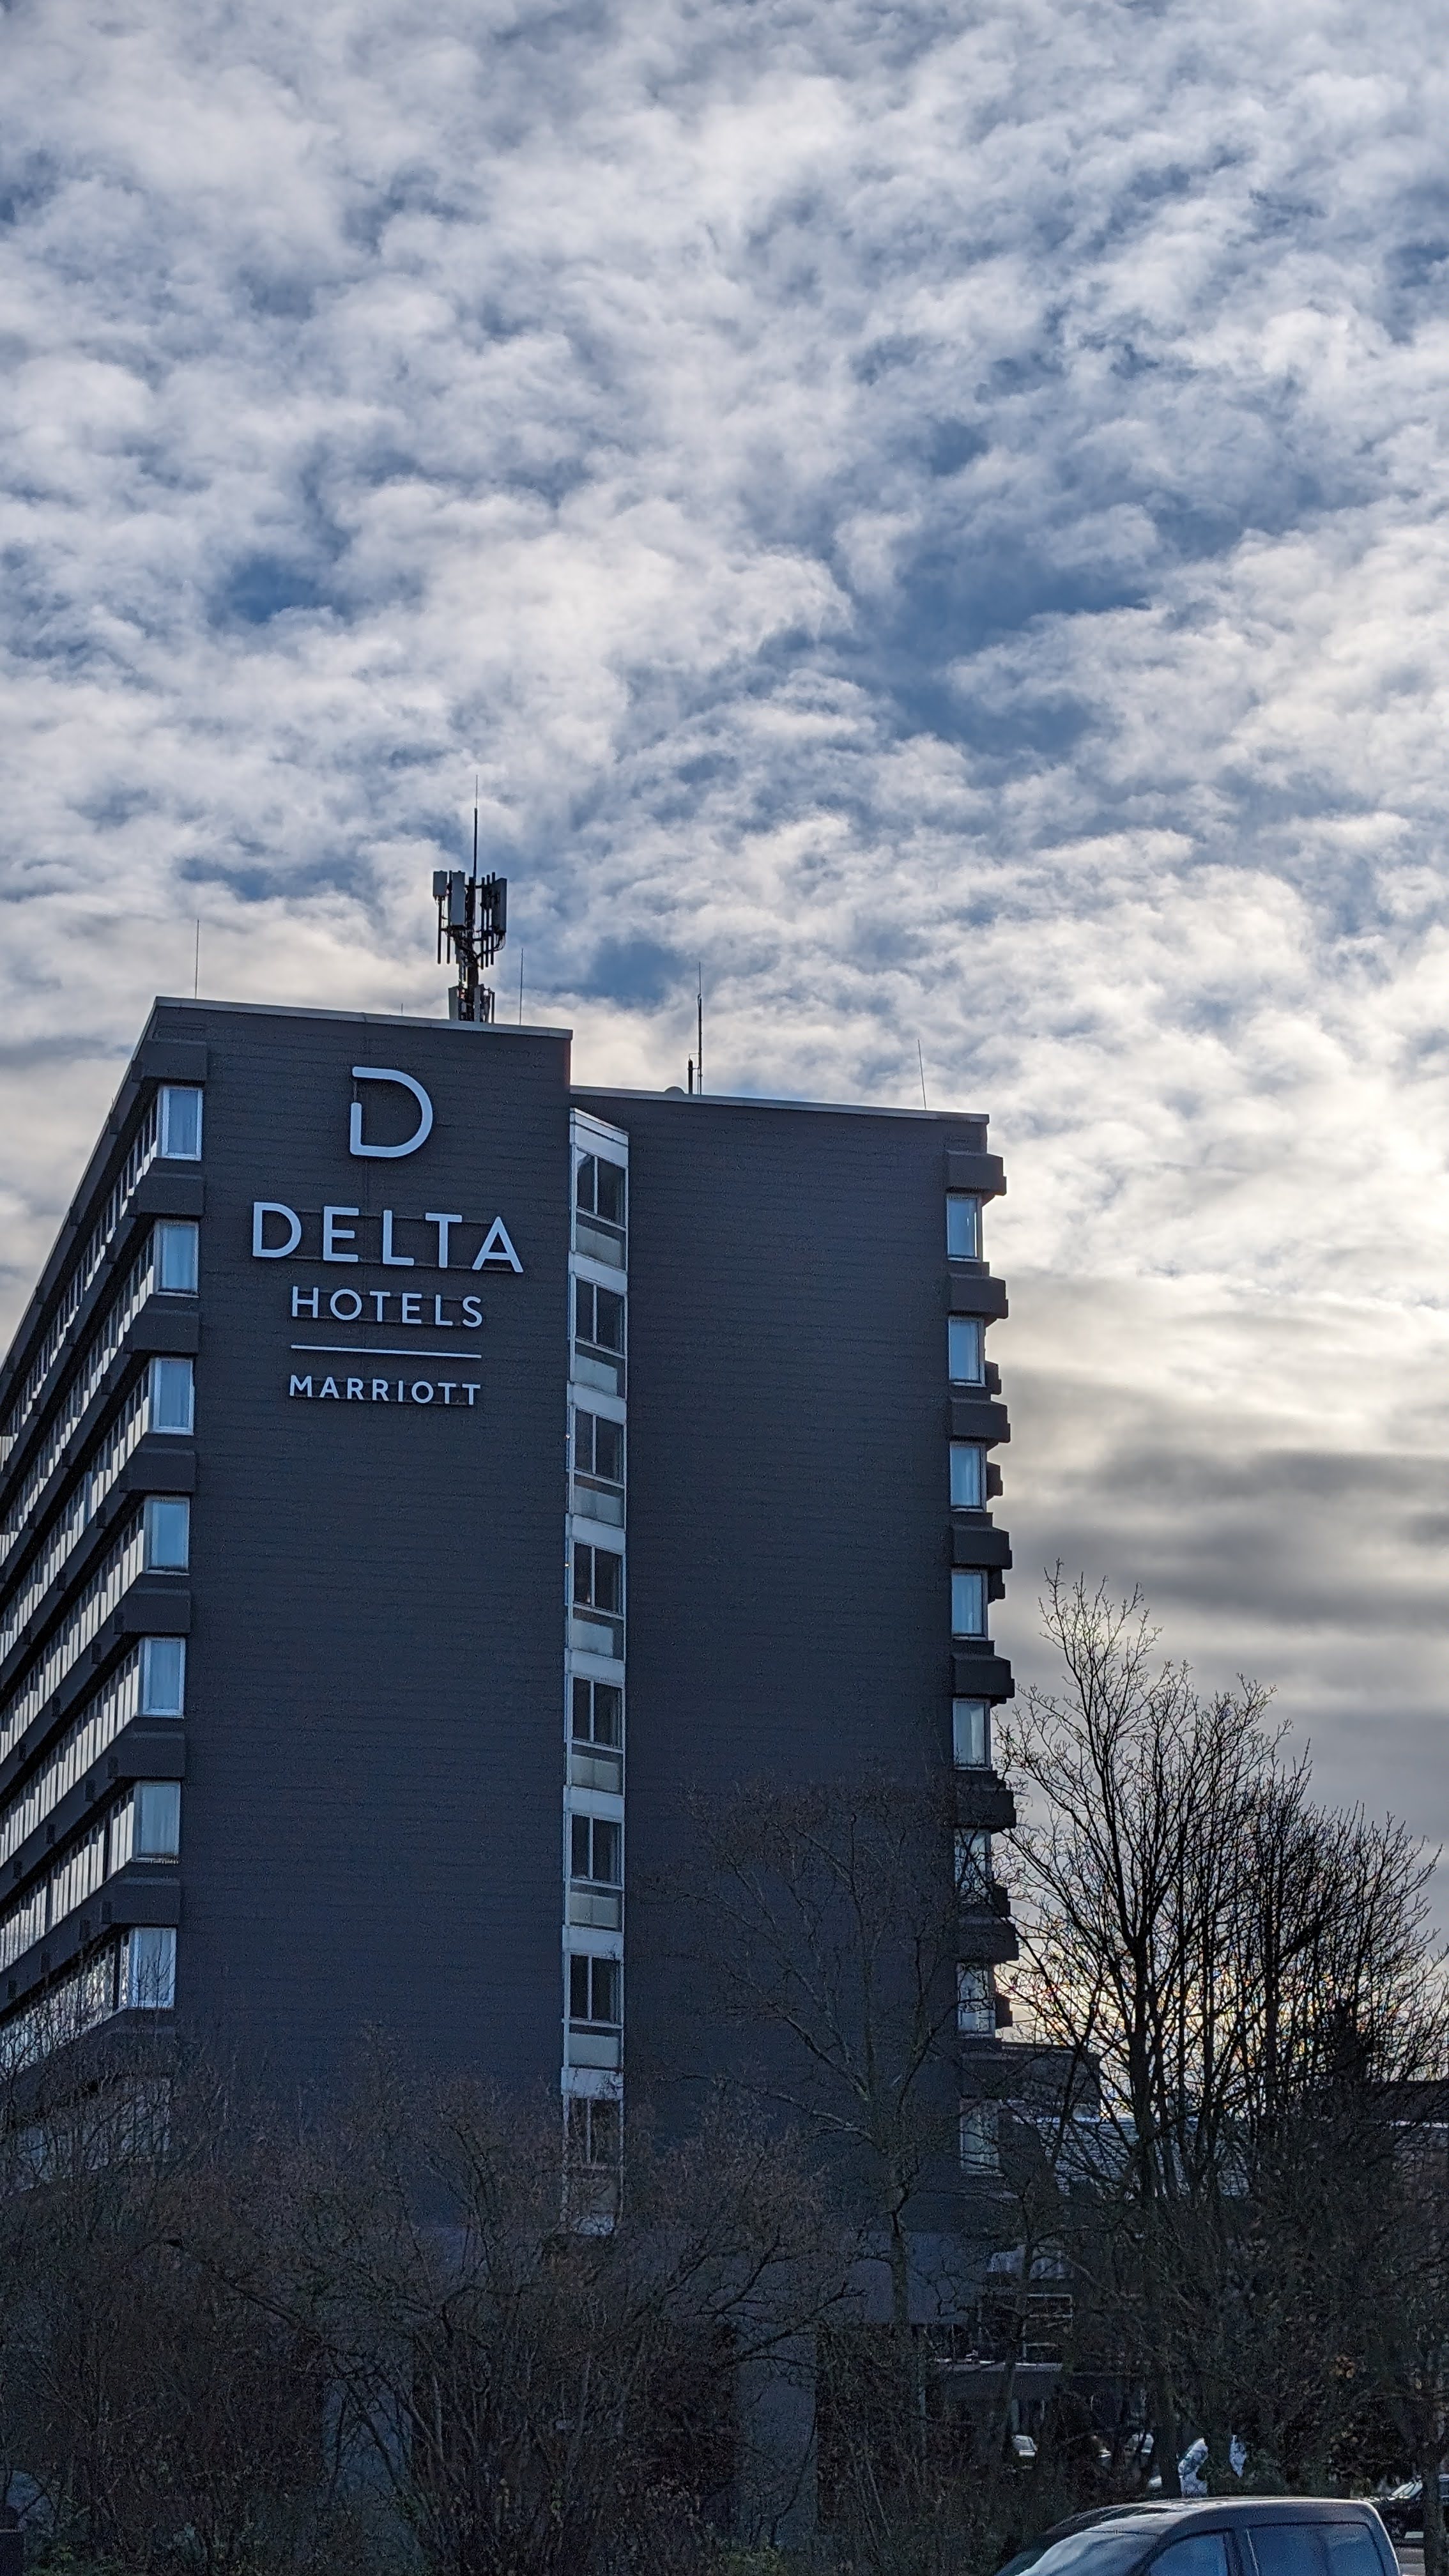 Ein Bild des DELTA Hotels am Büchelter Hof von der gegenüberliegenden Straßenseite aus